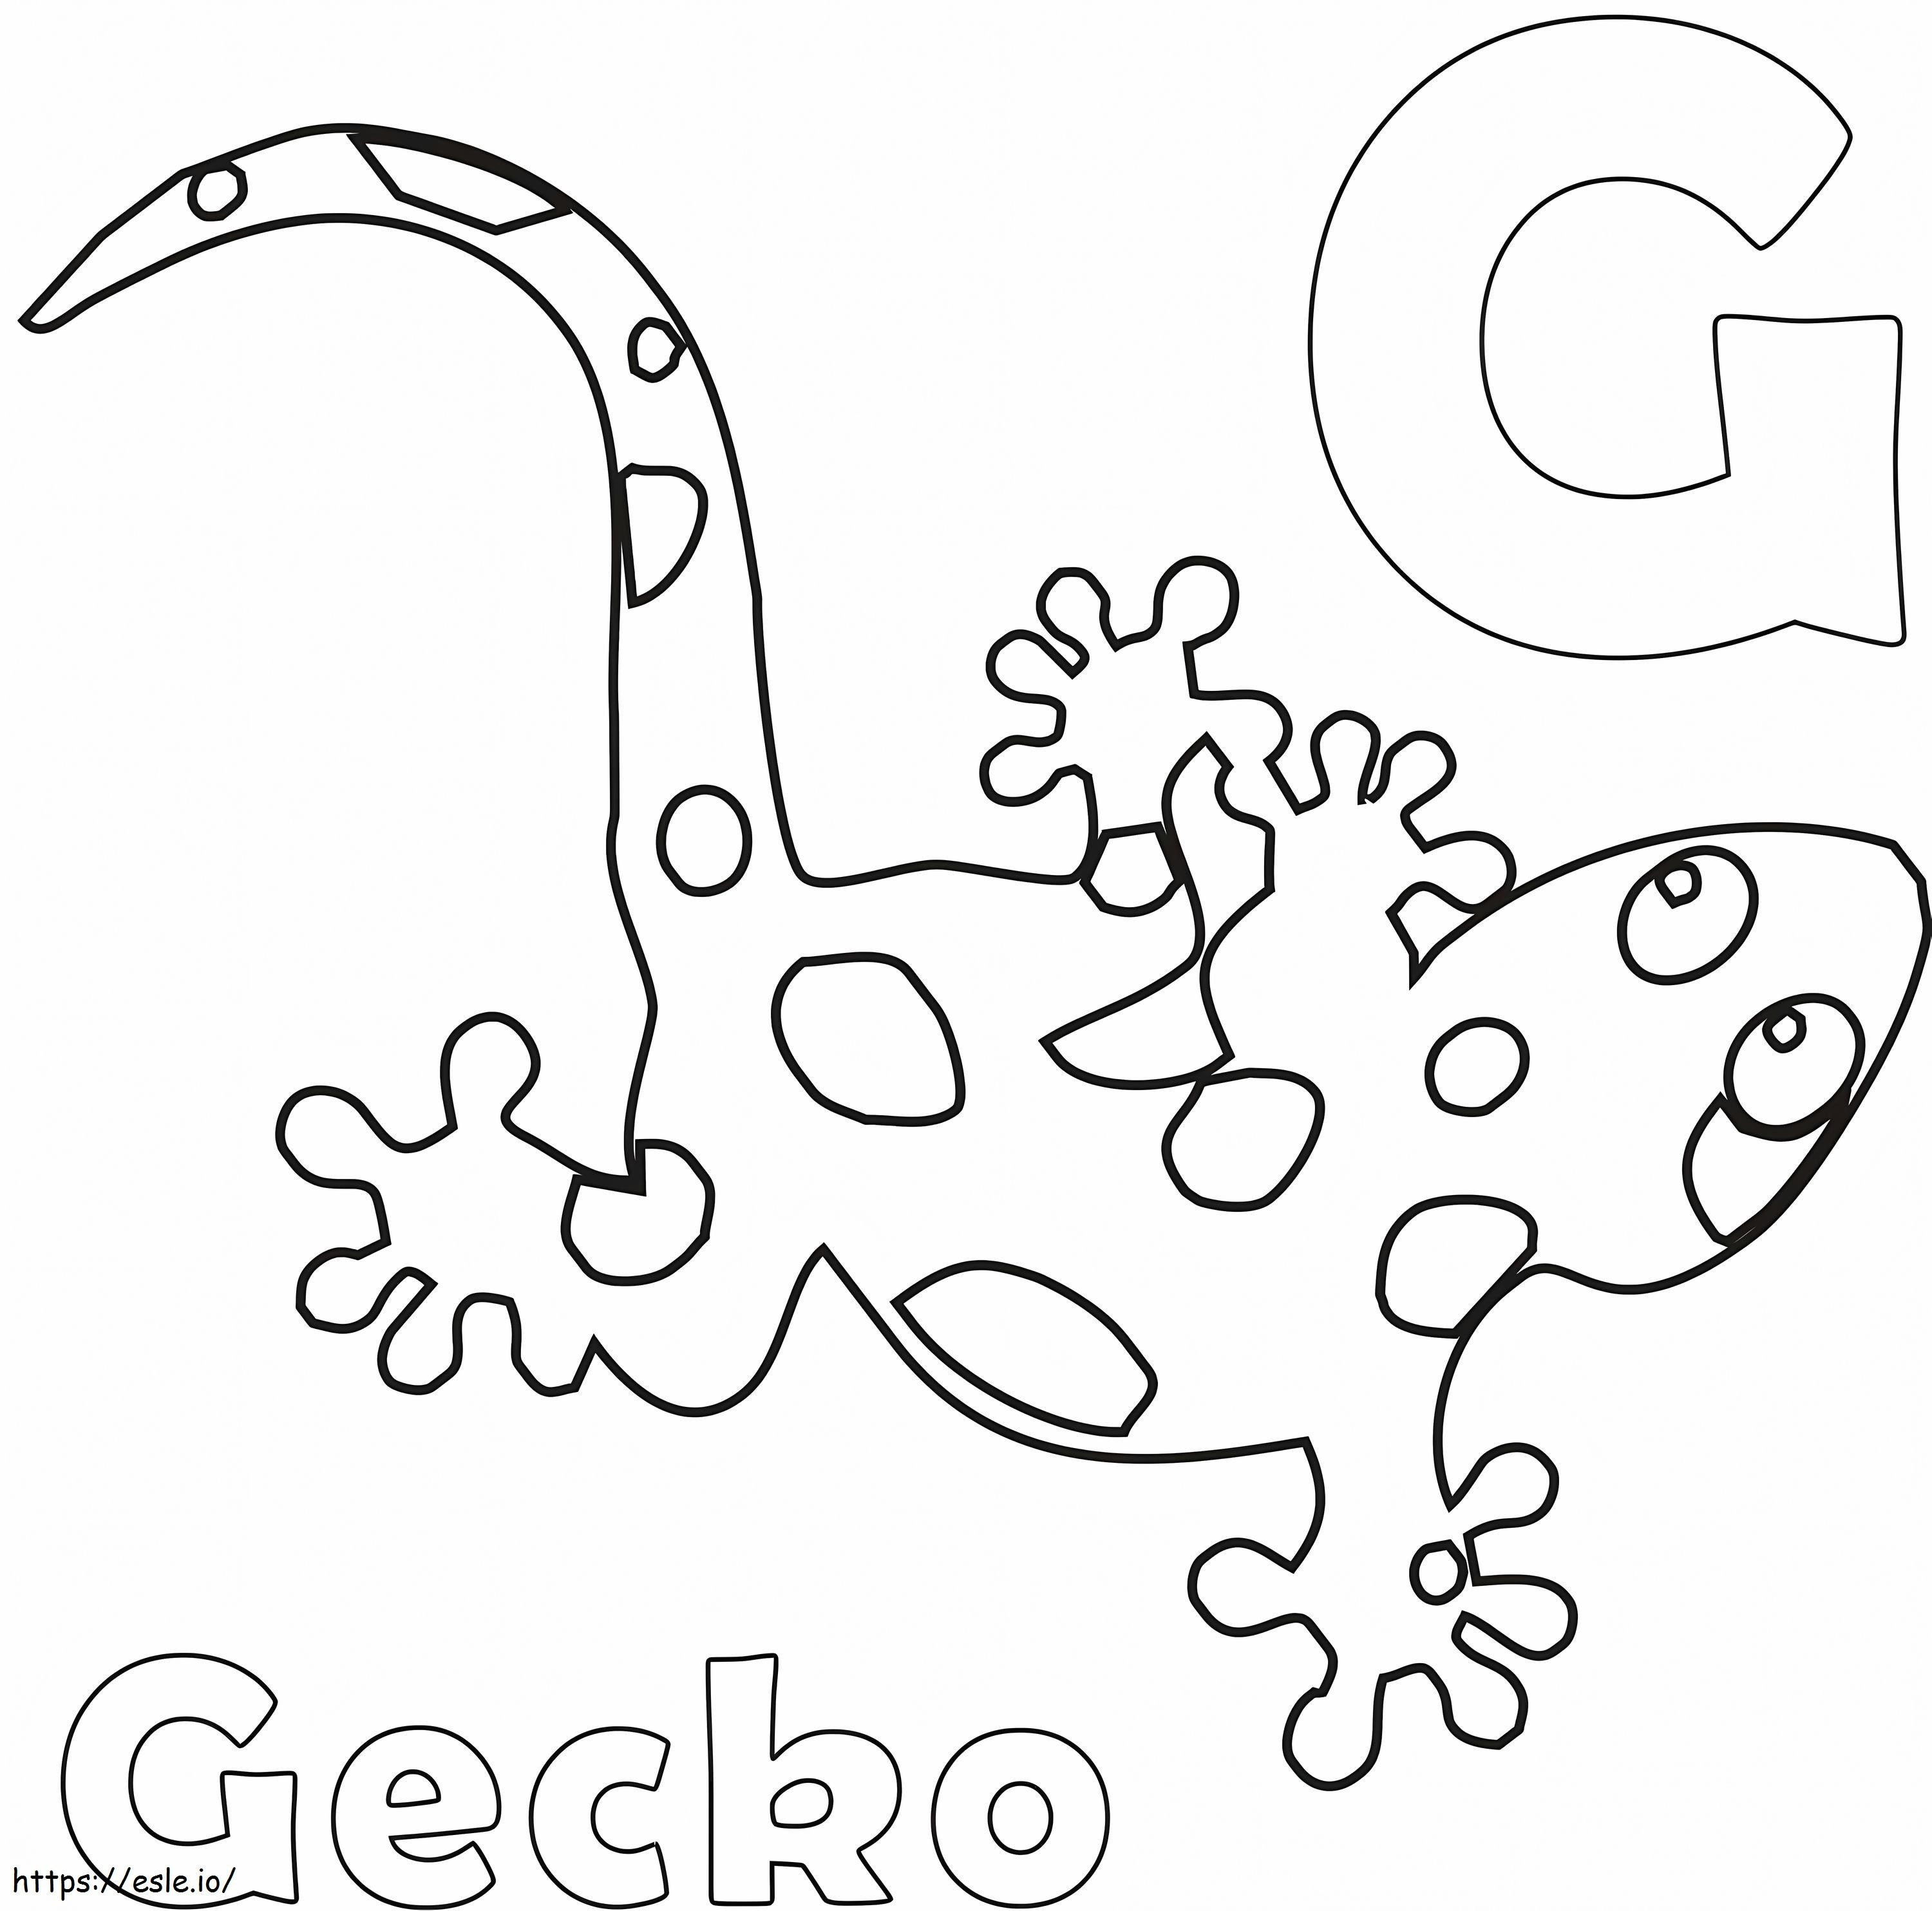 G betű és Gecko kifestő